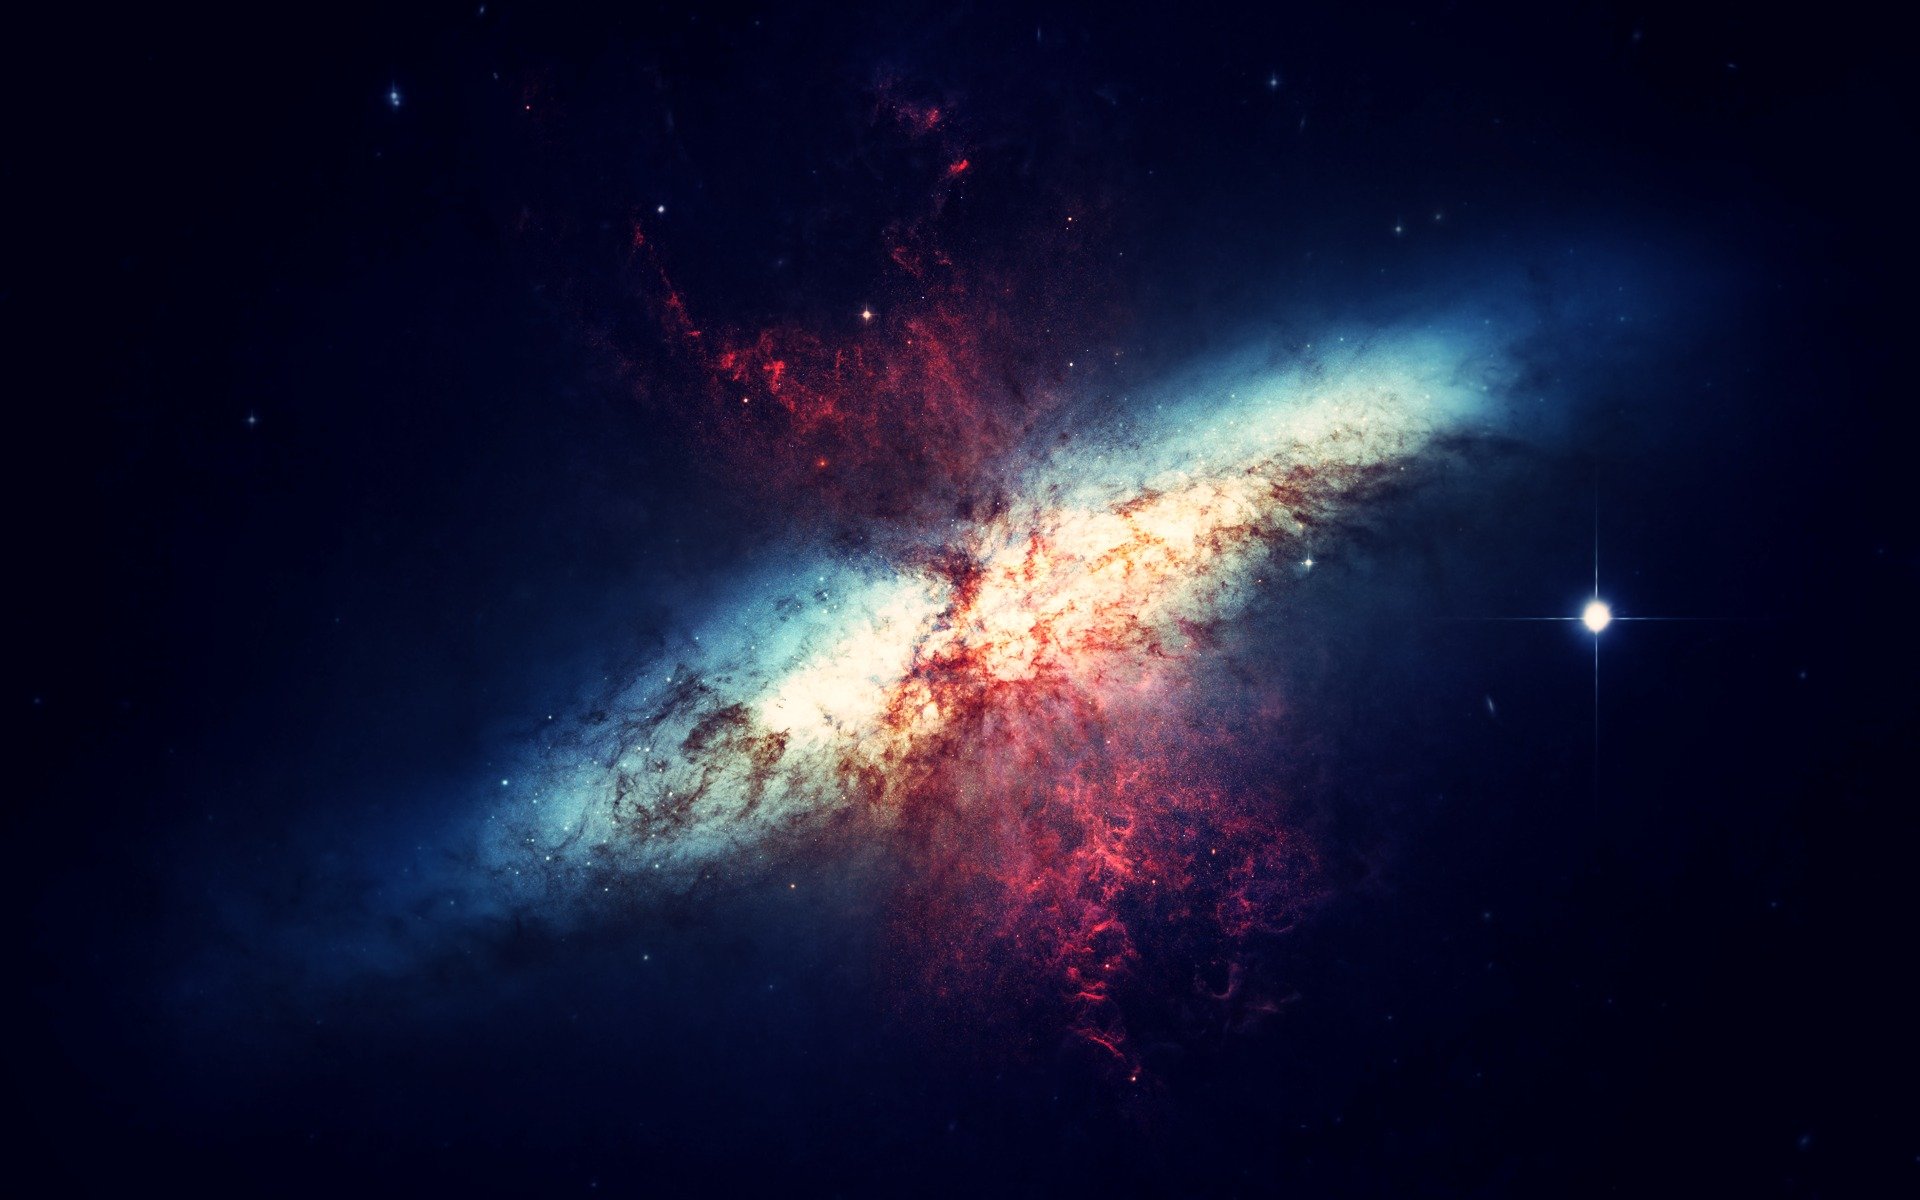 W kosmosie mogą istnieć „niewidzialne ściany”, które ustawiają galaktyki